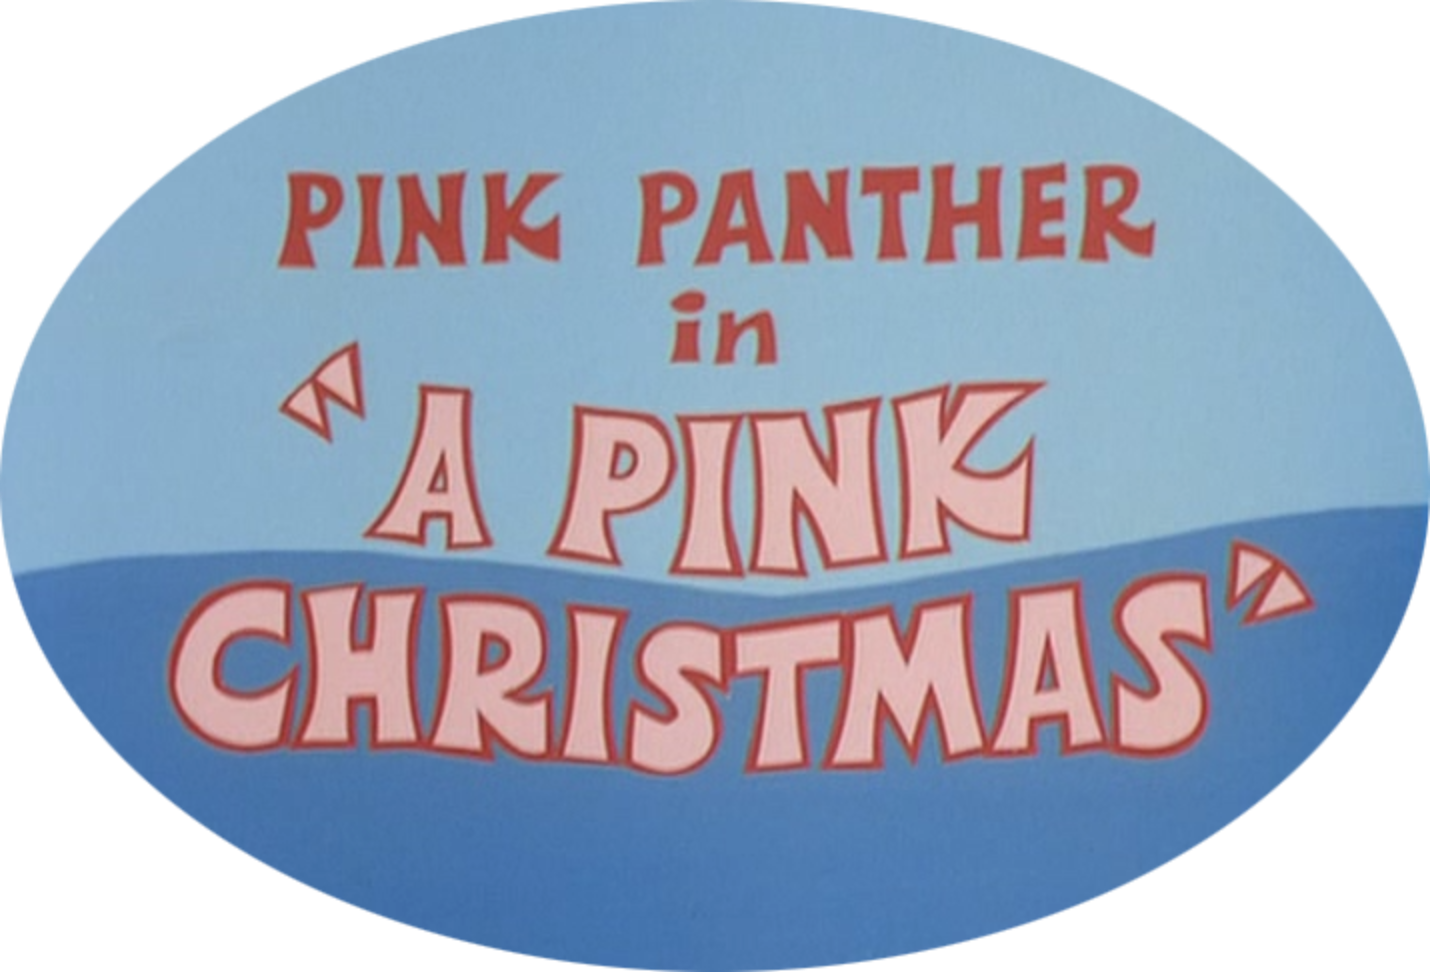 A Pink Christmas